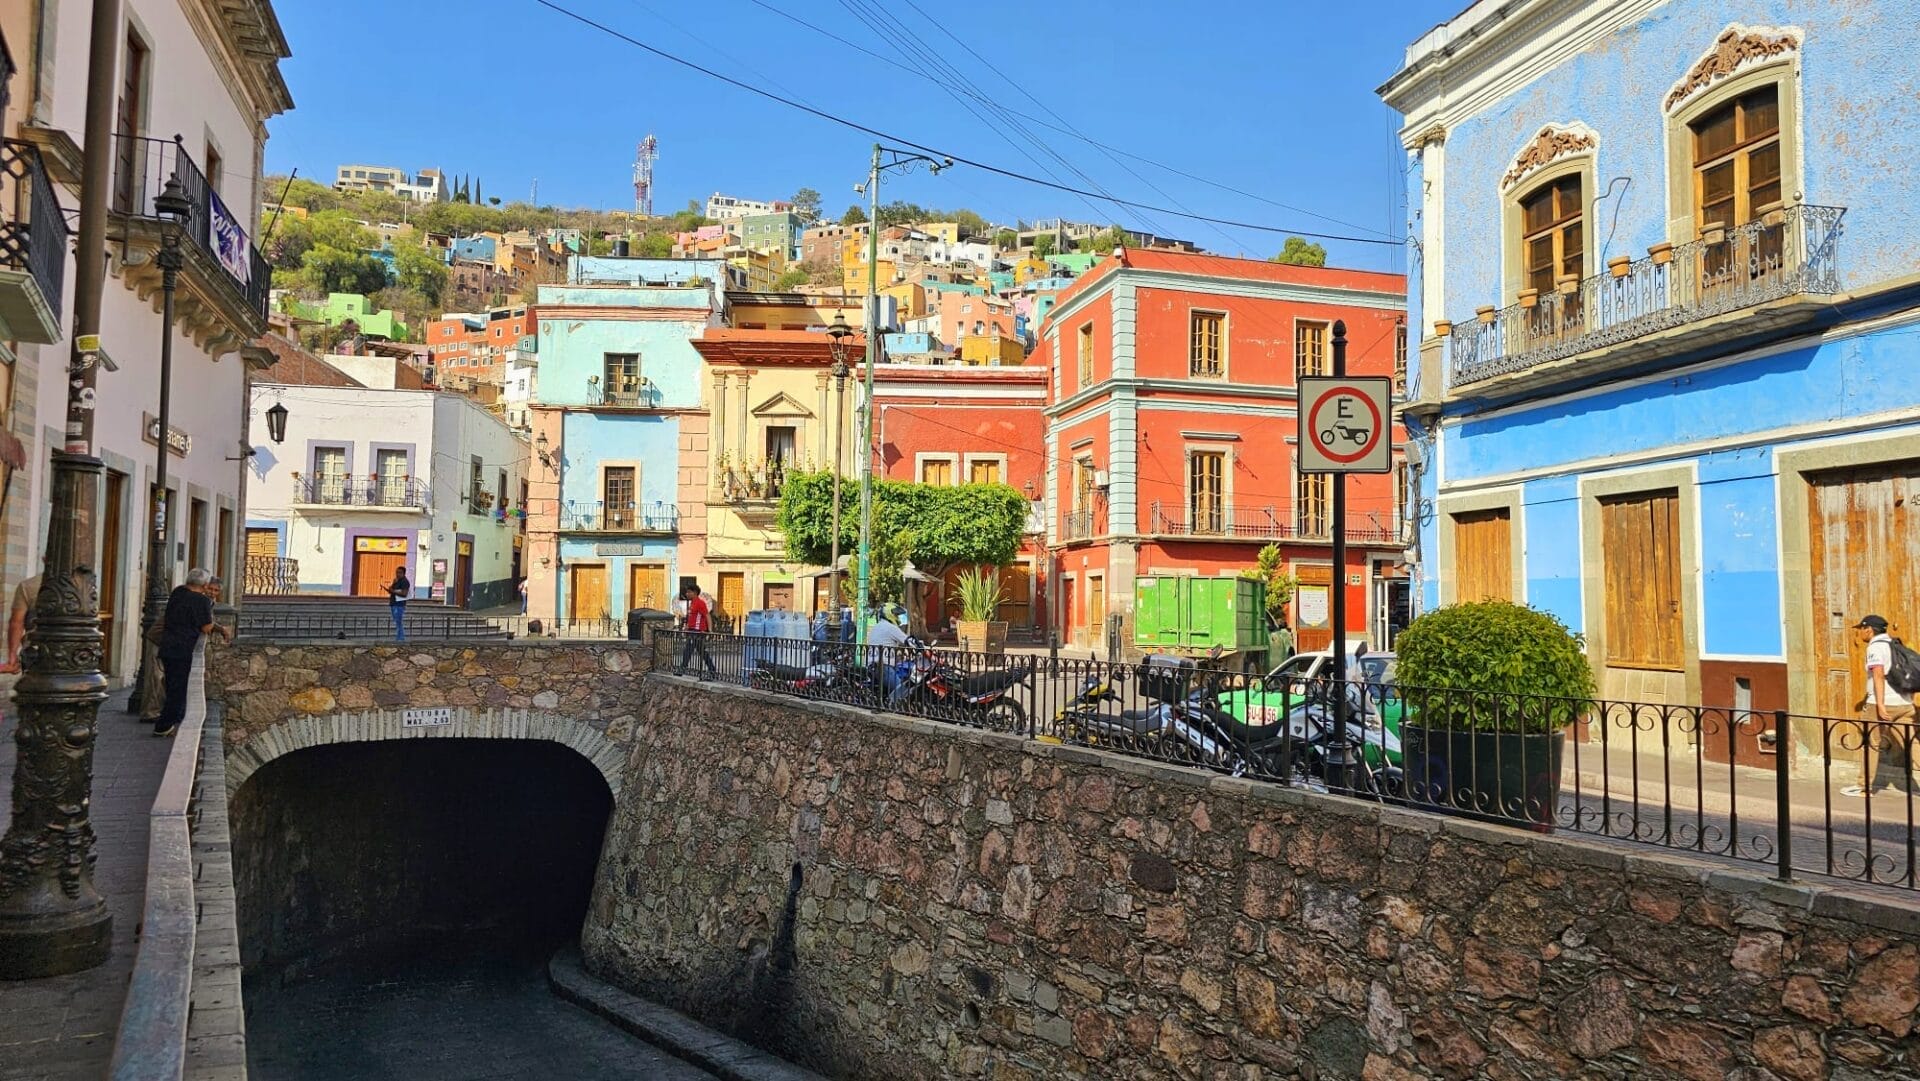 underground tunnel - Guanajuato, MX makes it more unique compared to San Miguel